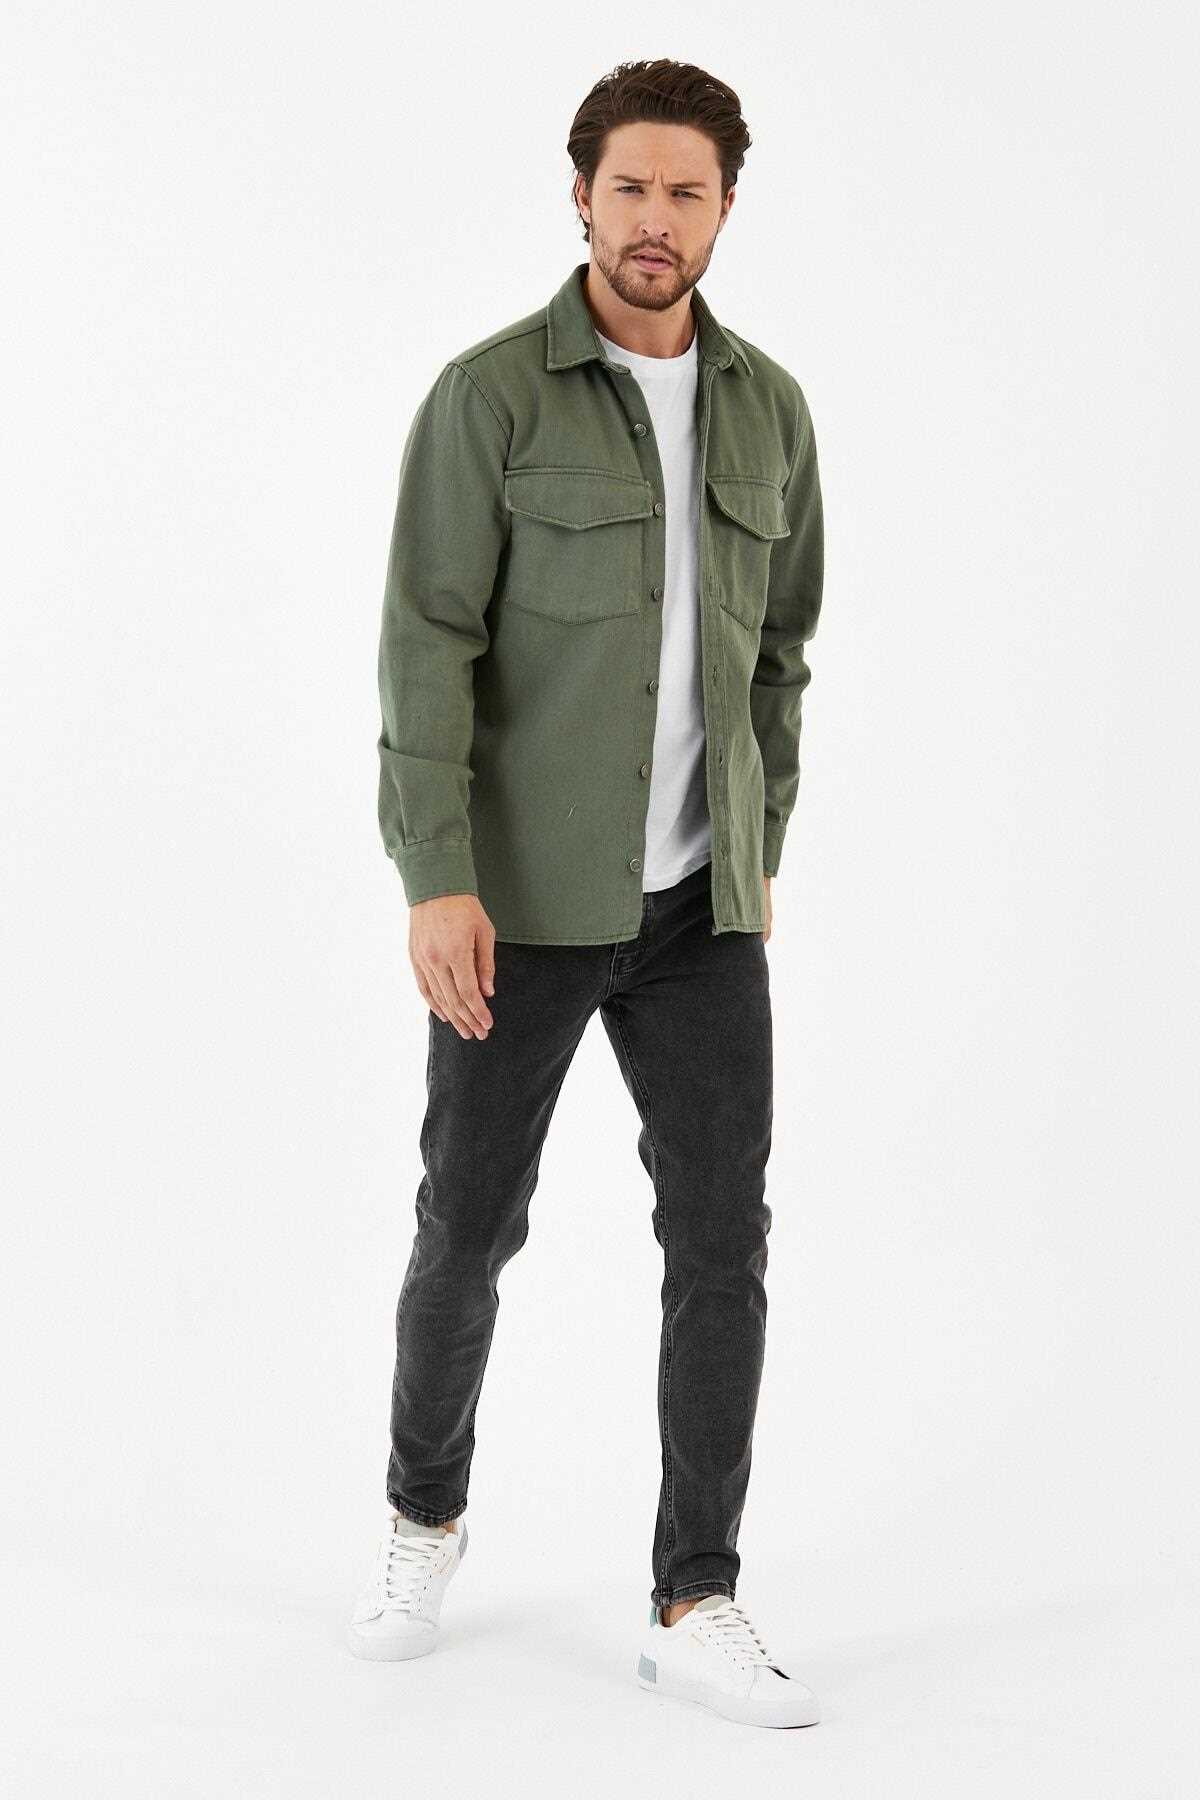 خرید انلاین ژاکت لی مردانه خاص برند DOAYS سبز لجنی ty138781714